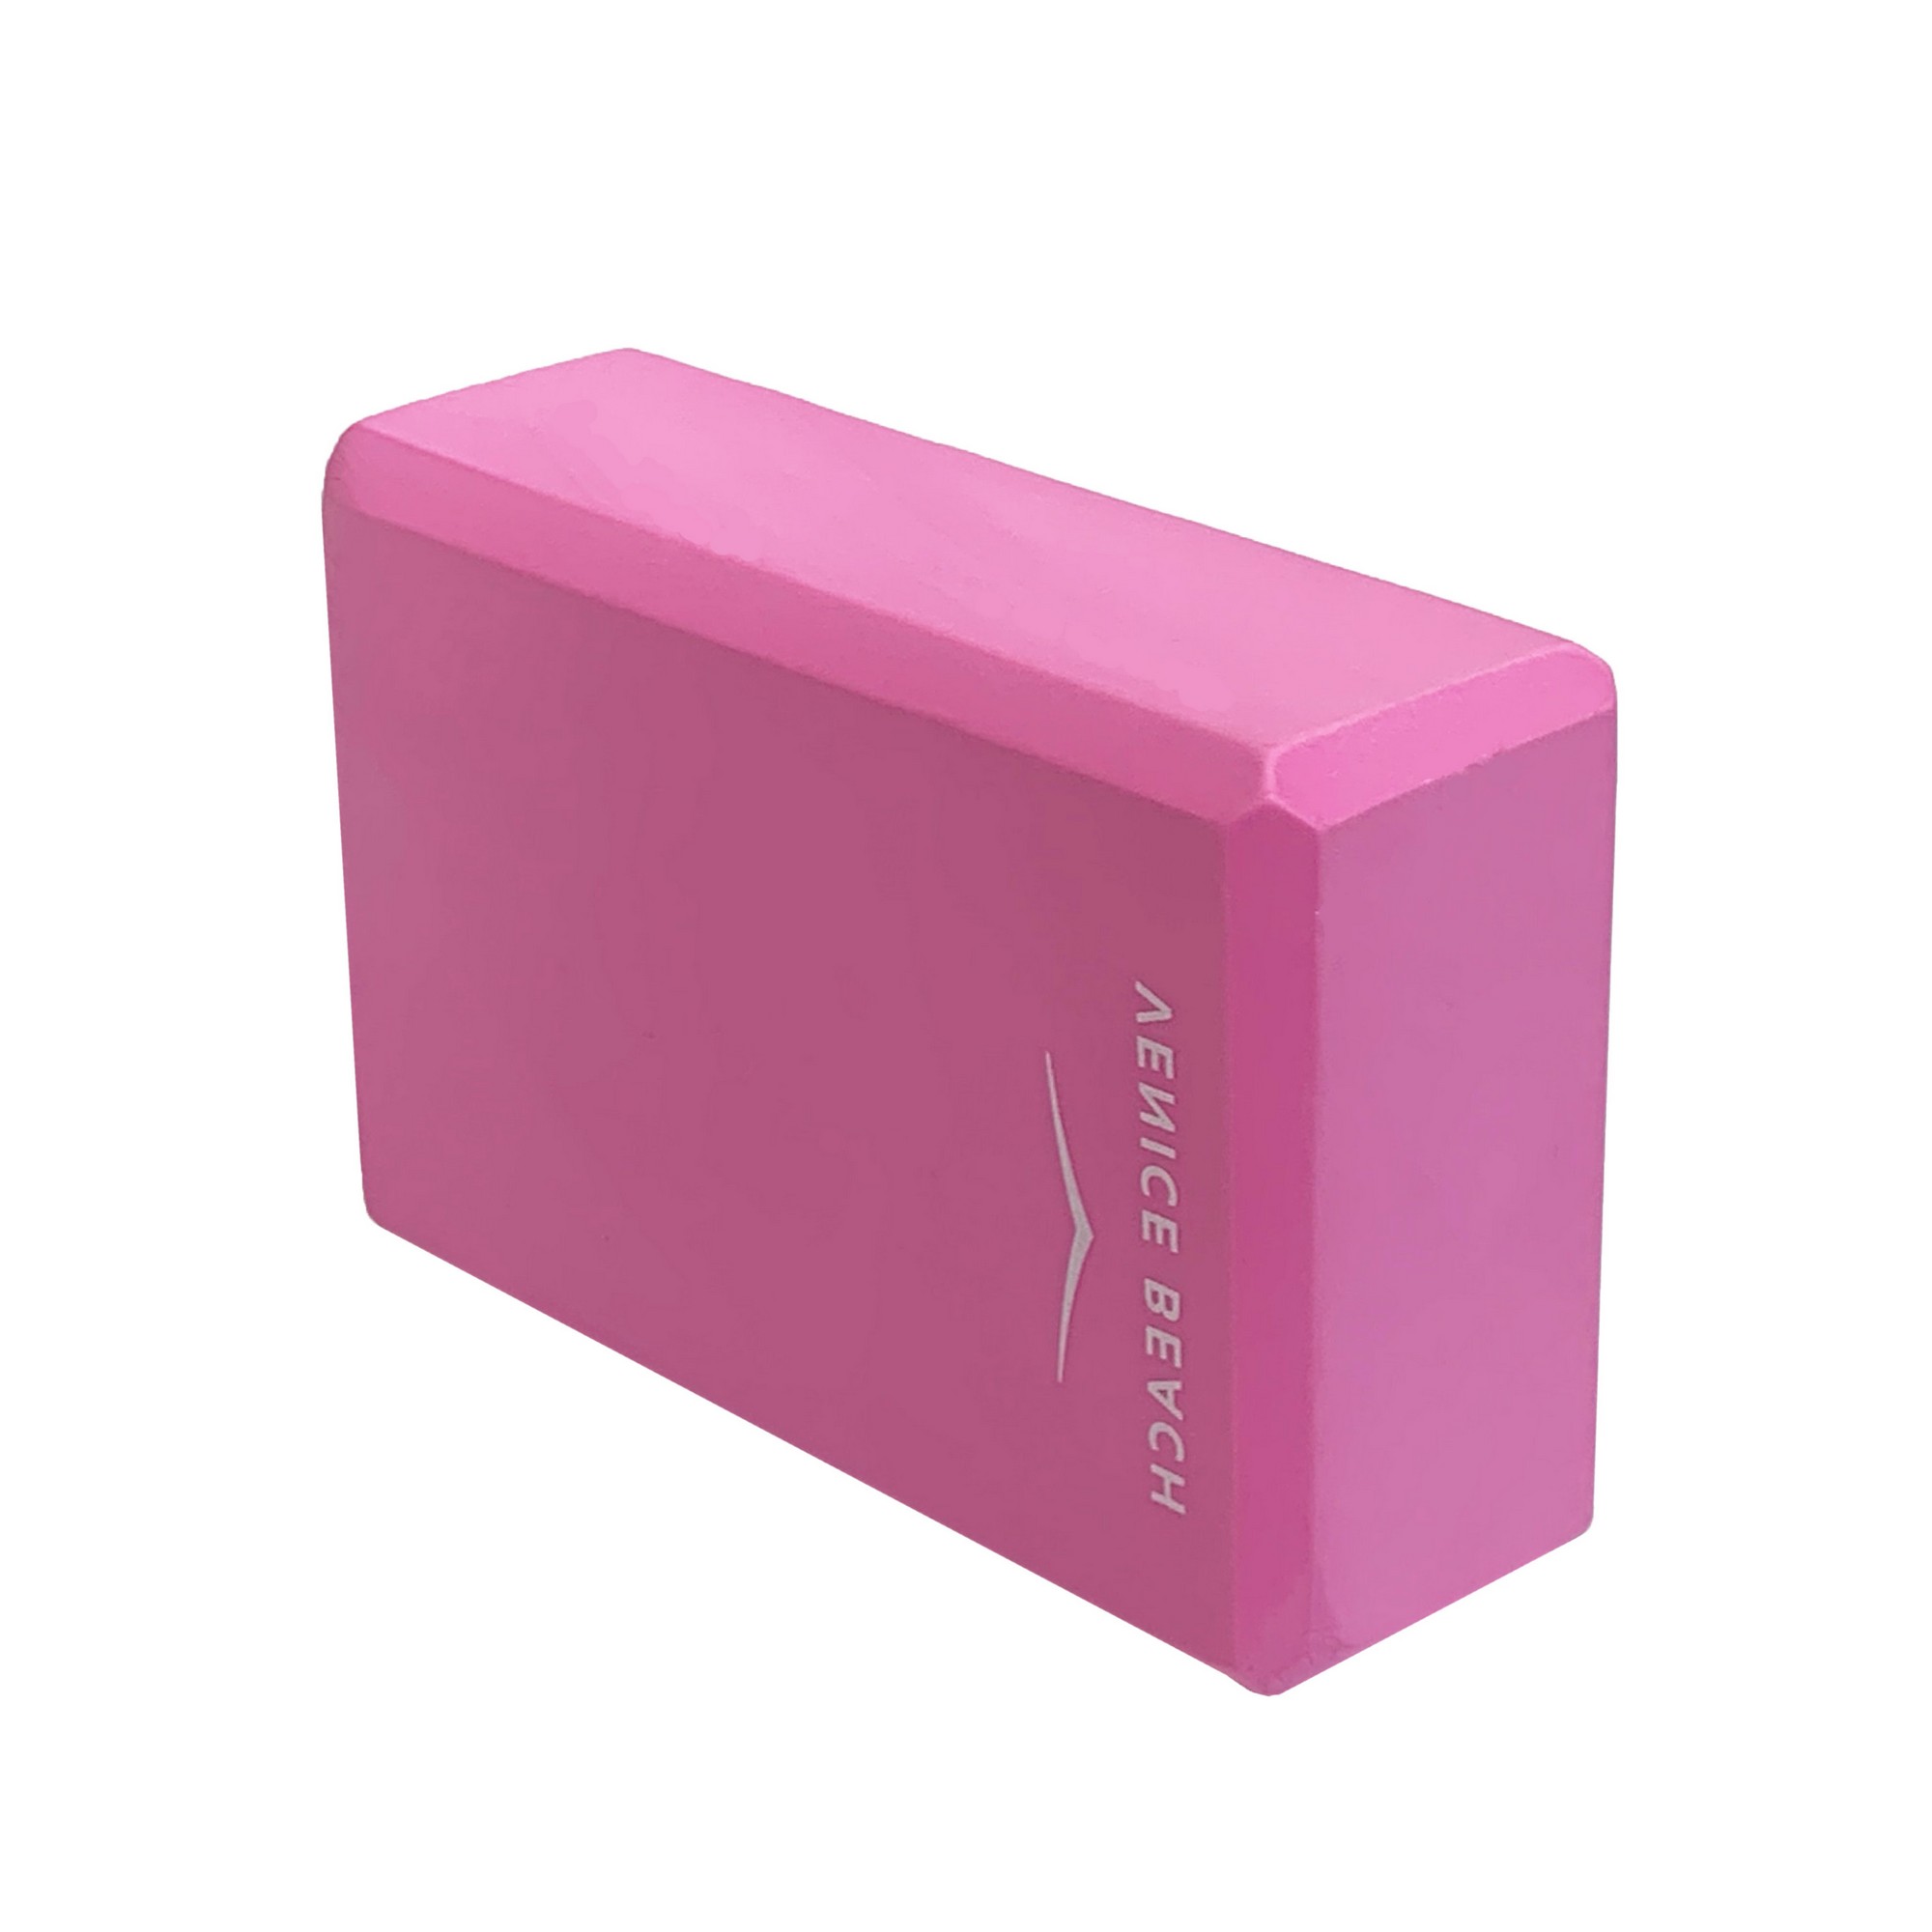 Йога блок Sportex полумягкий, из вспененного ЭВА 22,3х15х7,6 см E39131-38 розовый - фото 1